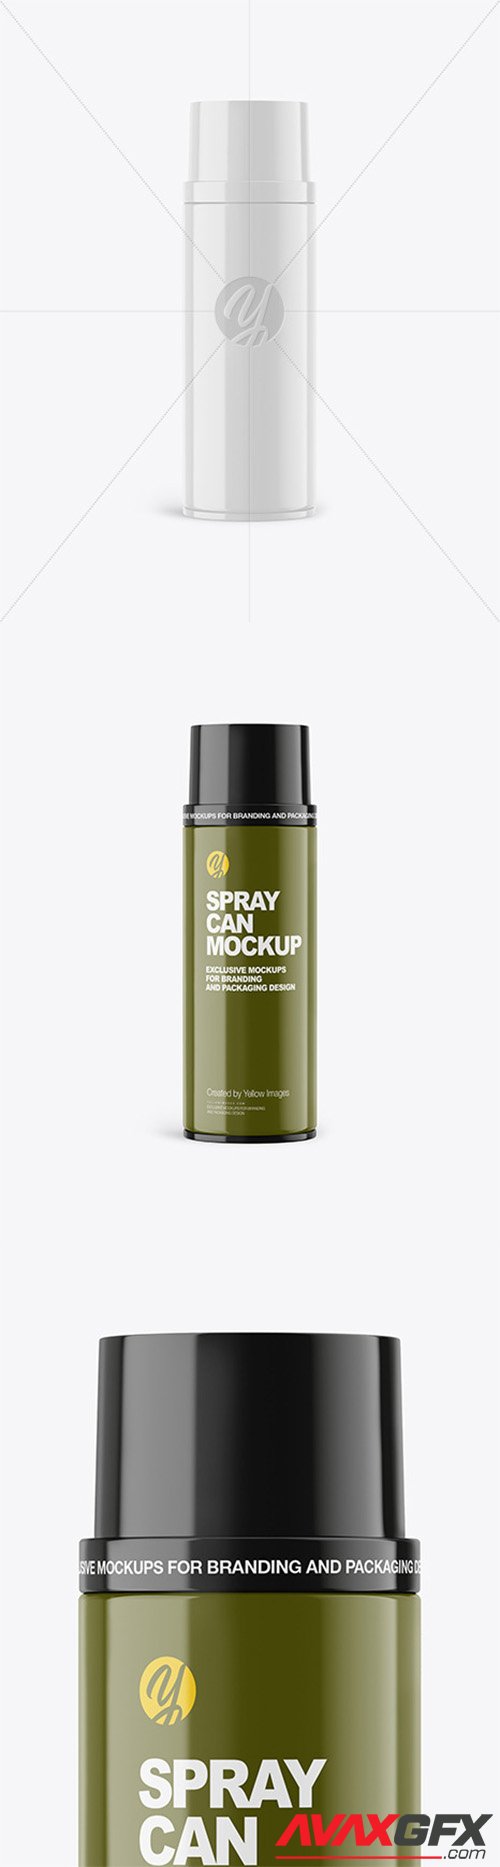 Glossy Spray Can Mockup 64886